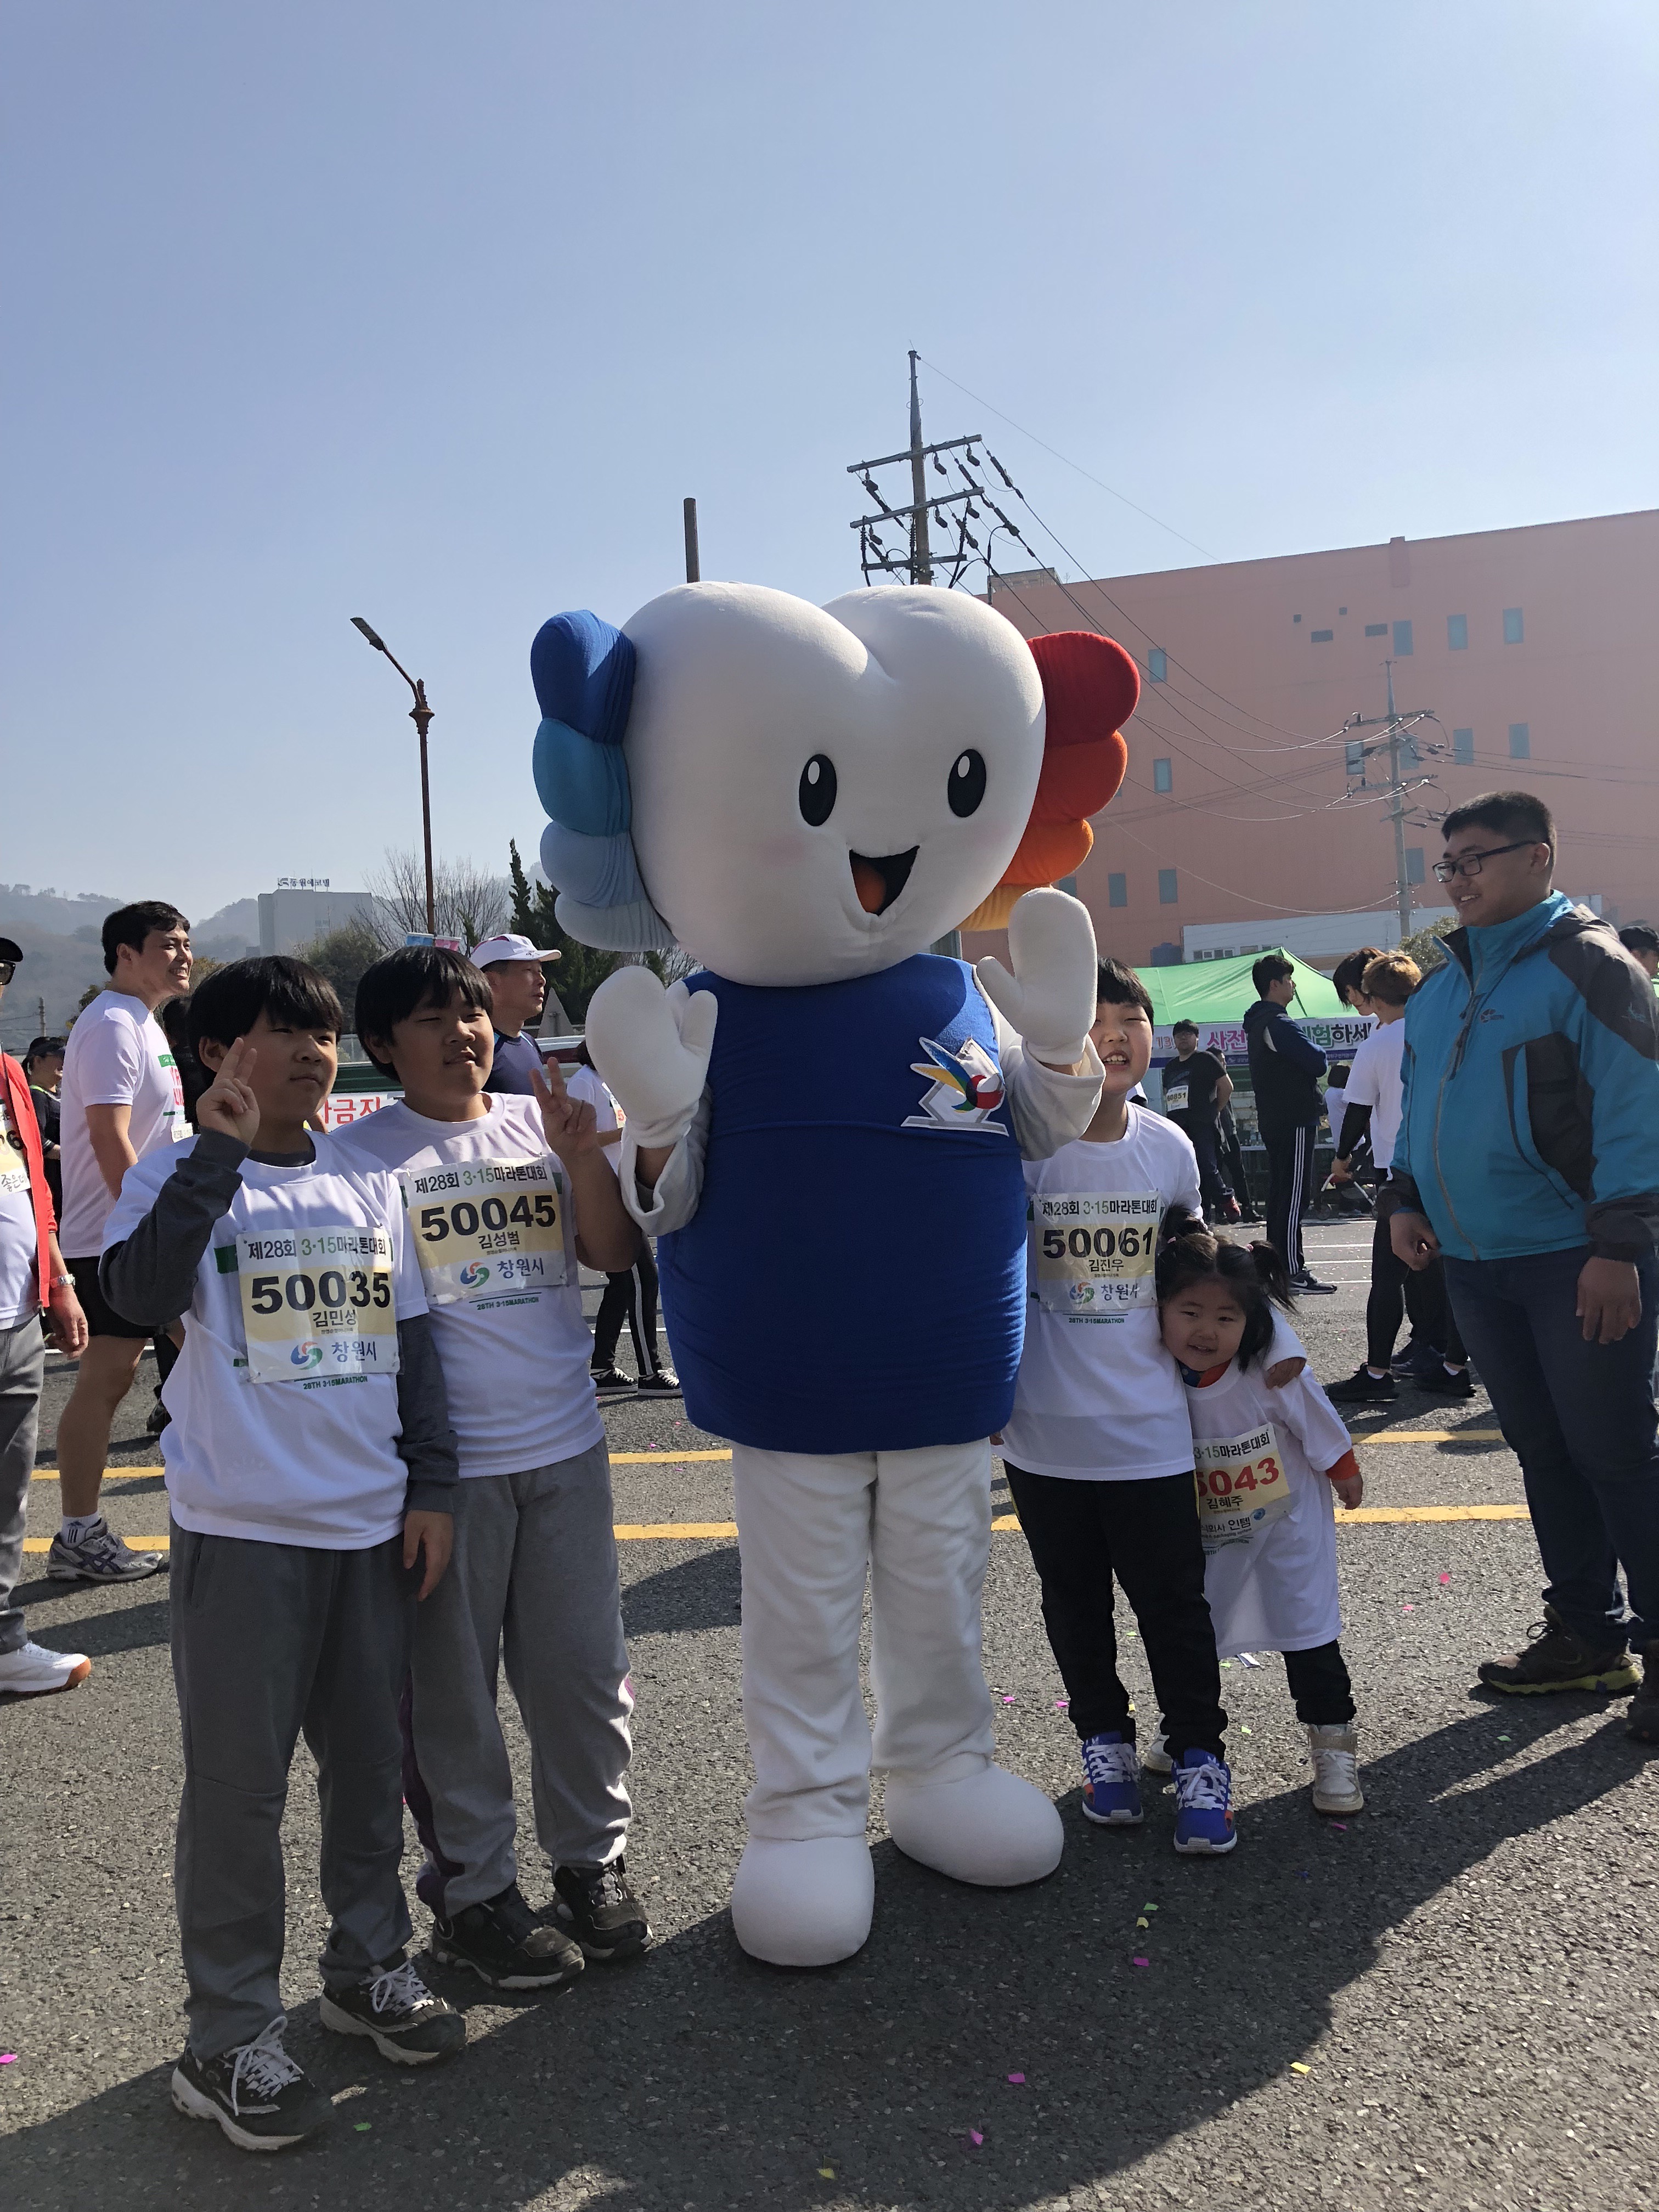 3.15마라톤에 참가한 미래유권자 어린이들이 위원회 홍보캐릭터 '알리'와 함께 기념사진을 찍고 있다.